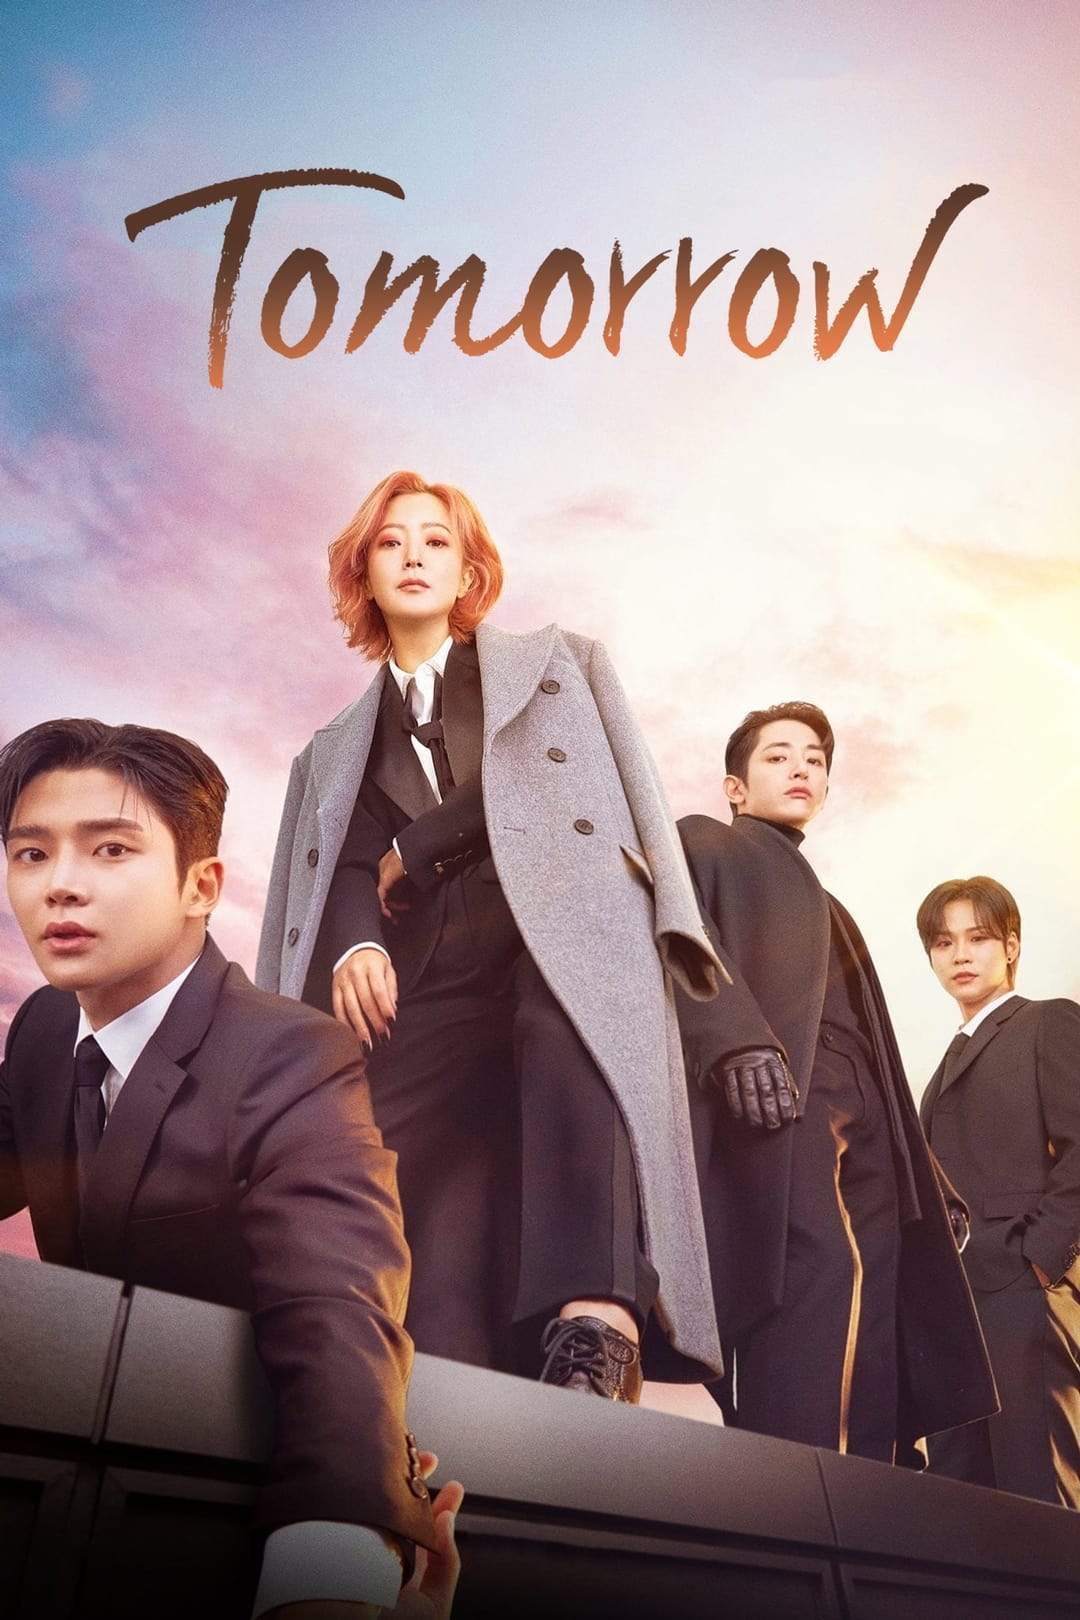 Plakát pro film “Zítra je taky den”